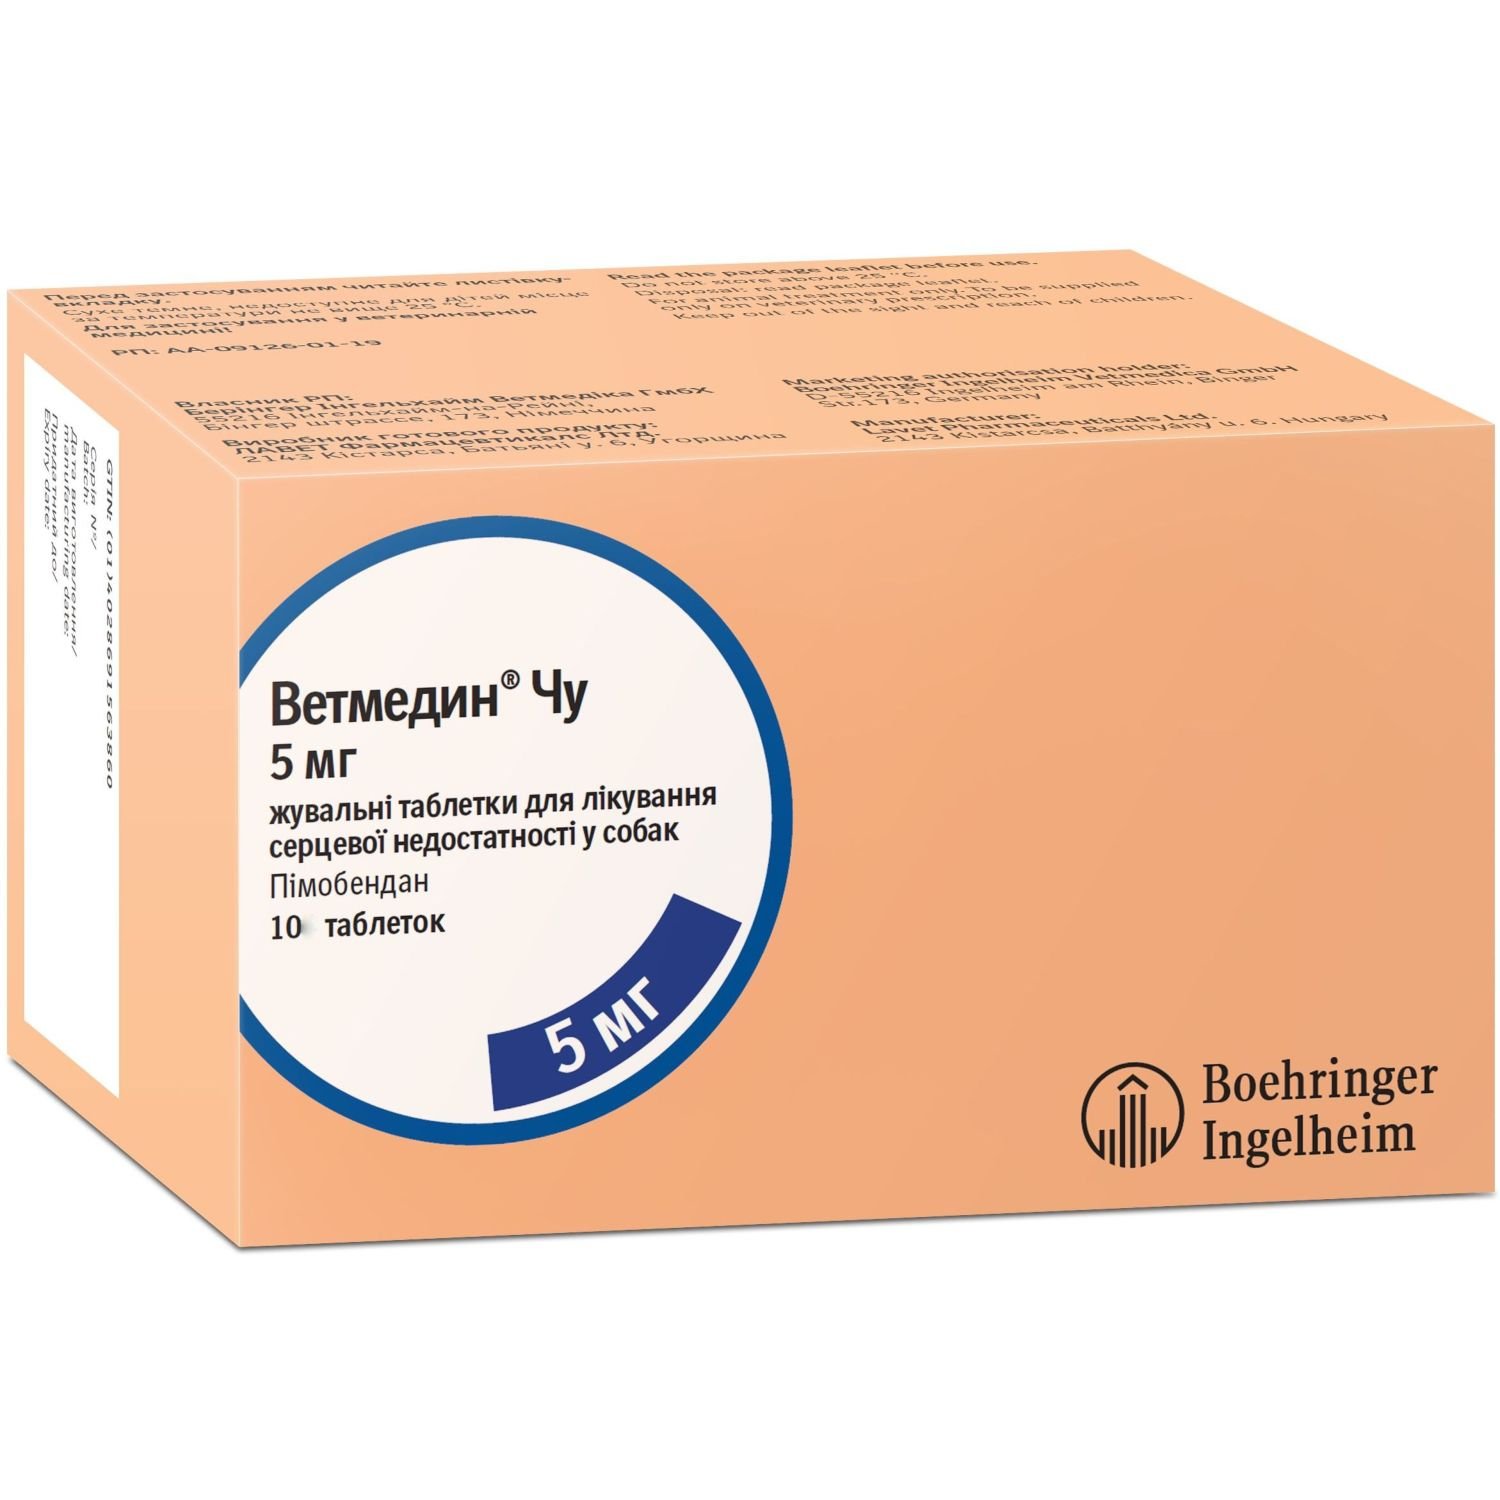 Жевательные таблетки Boehringer Ingelheim Ветмедин Чу, 5 мг, 10 шт. - фото 1